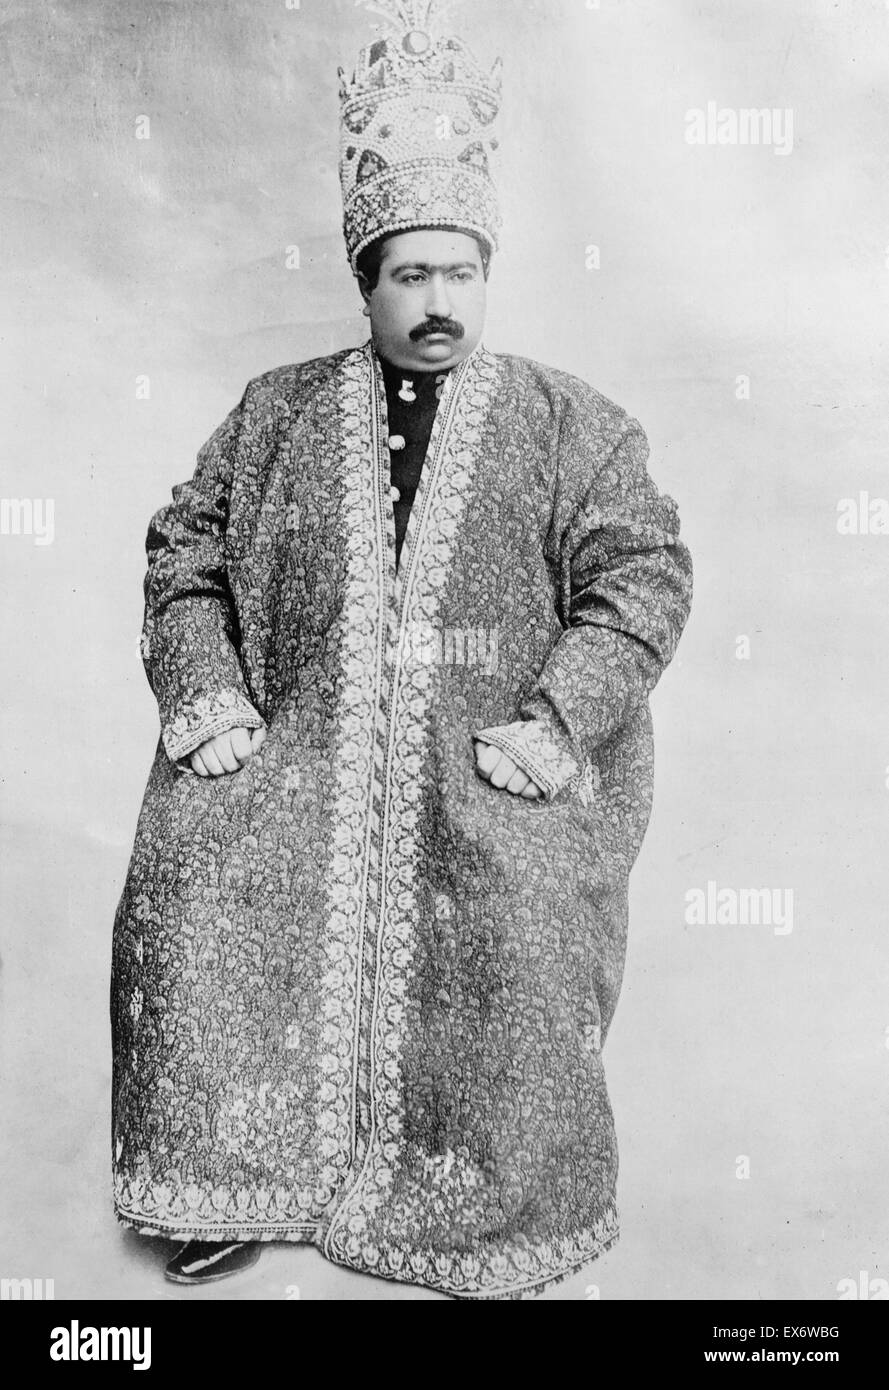 Schah von Persien, Mohammed Ali Mirzi, 19. Dezember 1907. Das Foto zeigt den Schah von Persien, Porträt, sitzen, tragen eine reich verzierte Gewand und Krone. Stockfoto